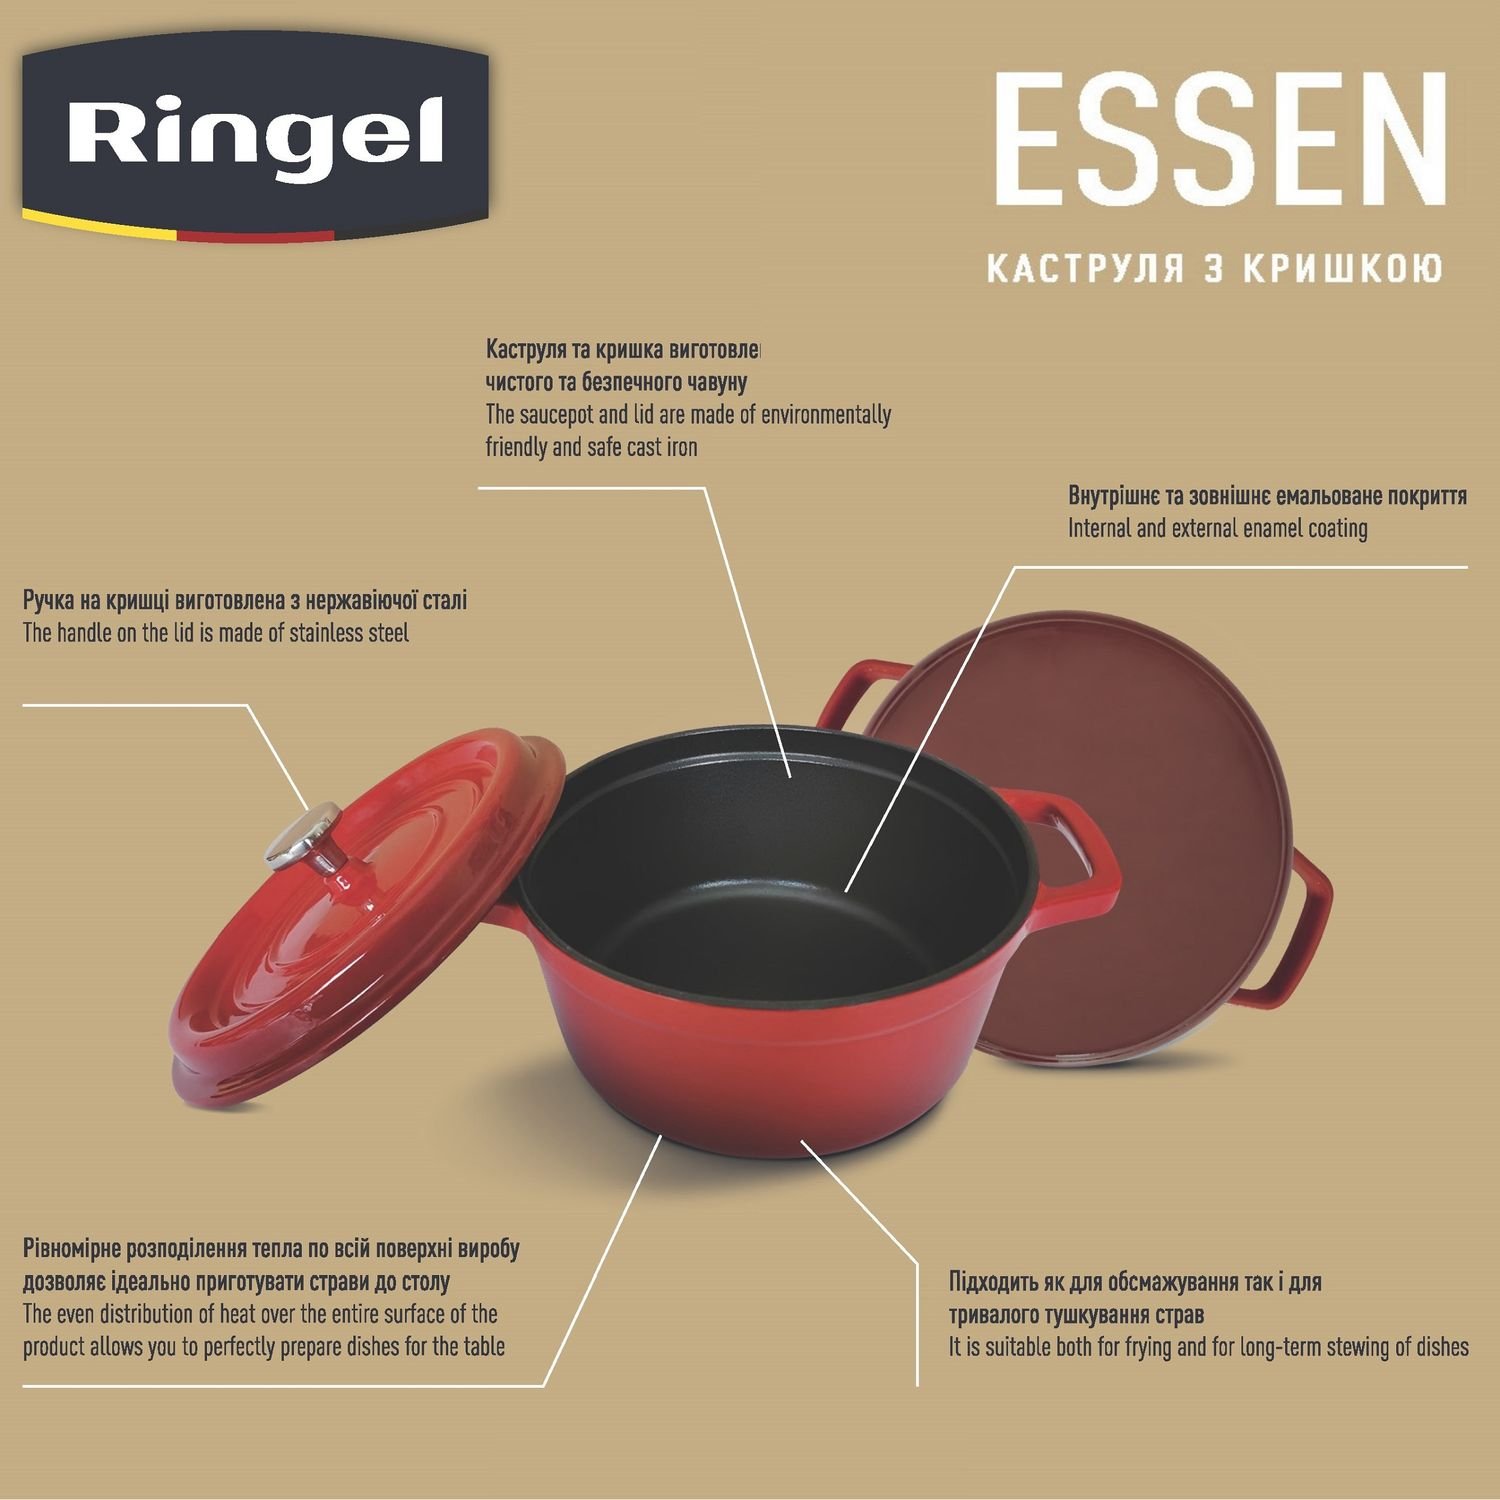 Каструля Ringel Essen, з кришкою, 26 см, 4,8 л, червона (RG-2300-26) - фото 5